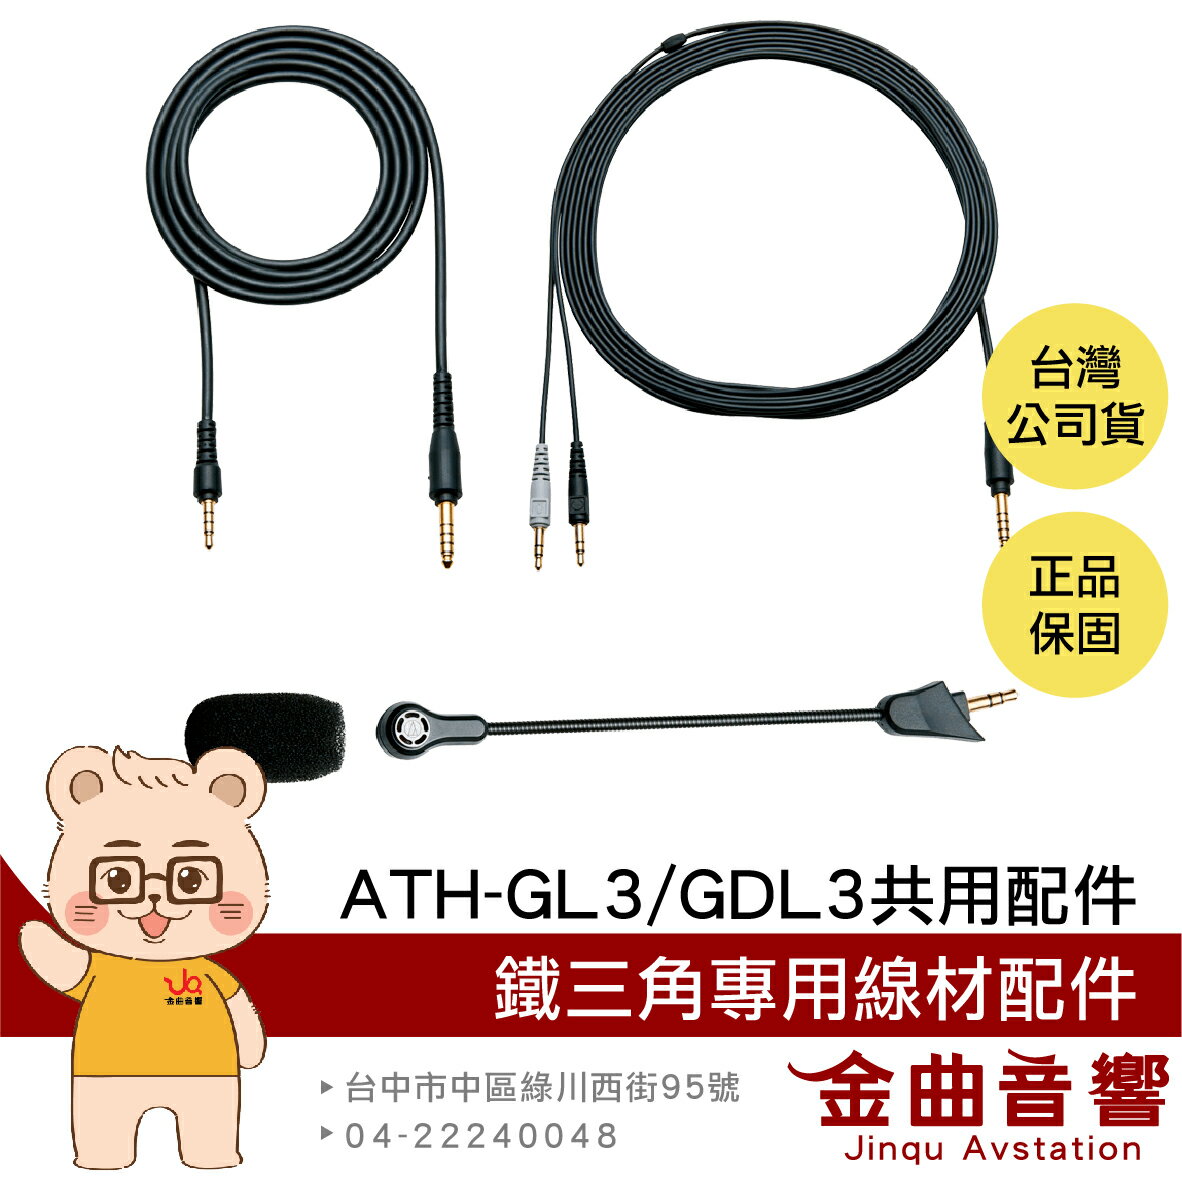 鐵三角 ATH-GL3 GDL3 配件 音源線 遊戲 麥克風 PS5 PC 共用 線材 | 金曲音響